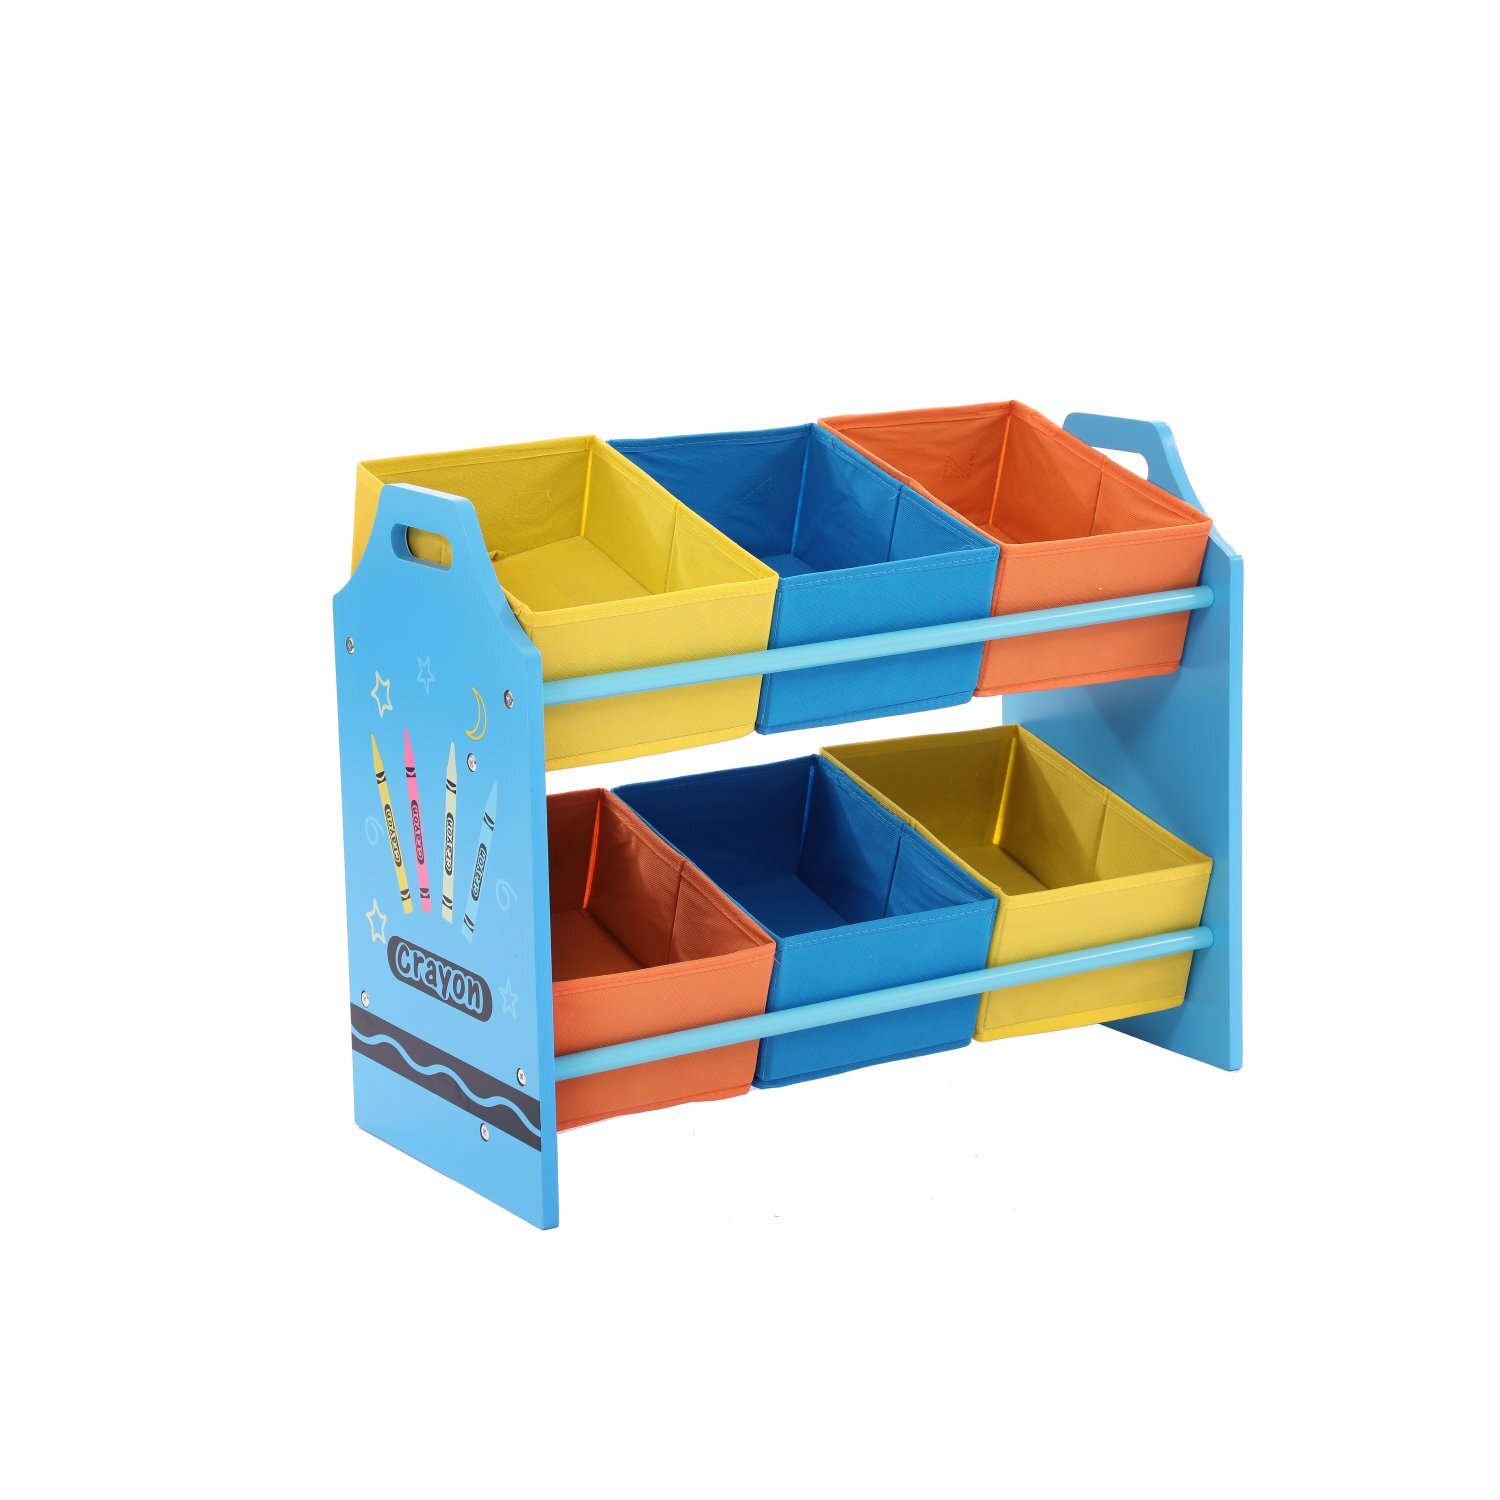 Oypla Childrens Crayon Organisation Toy Games Storage Unit Basket 